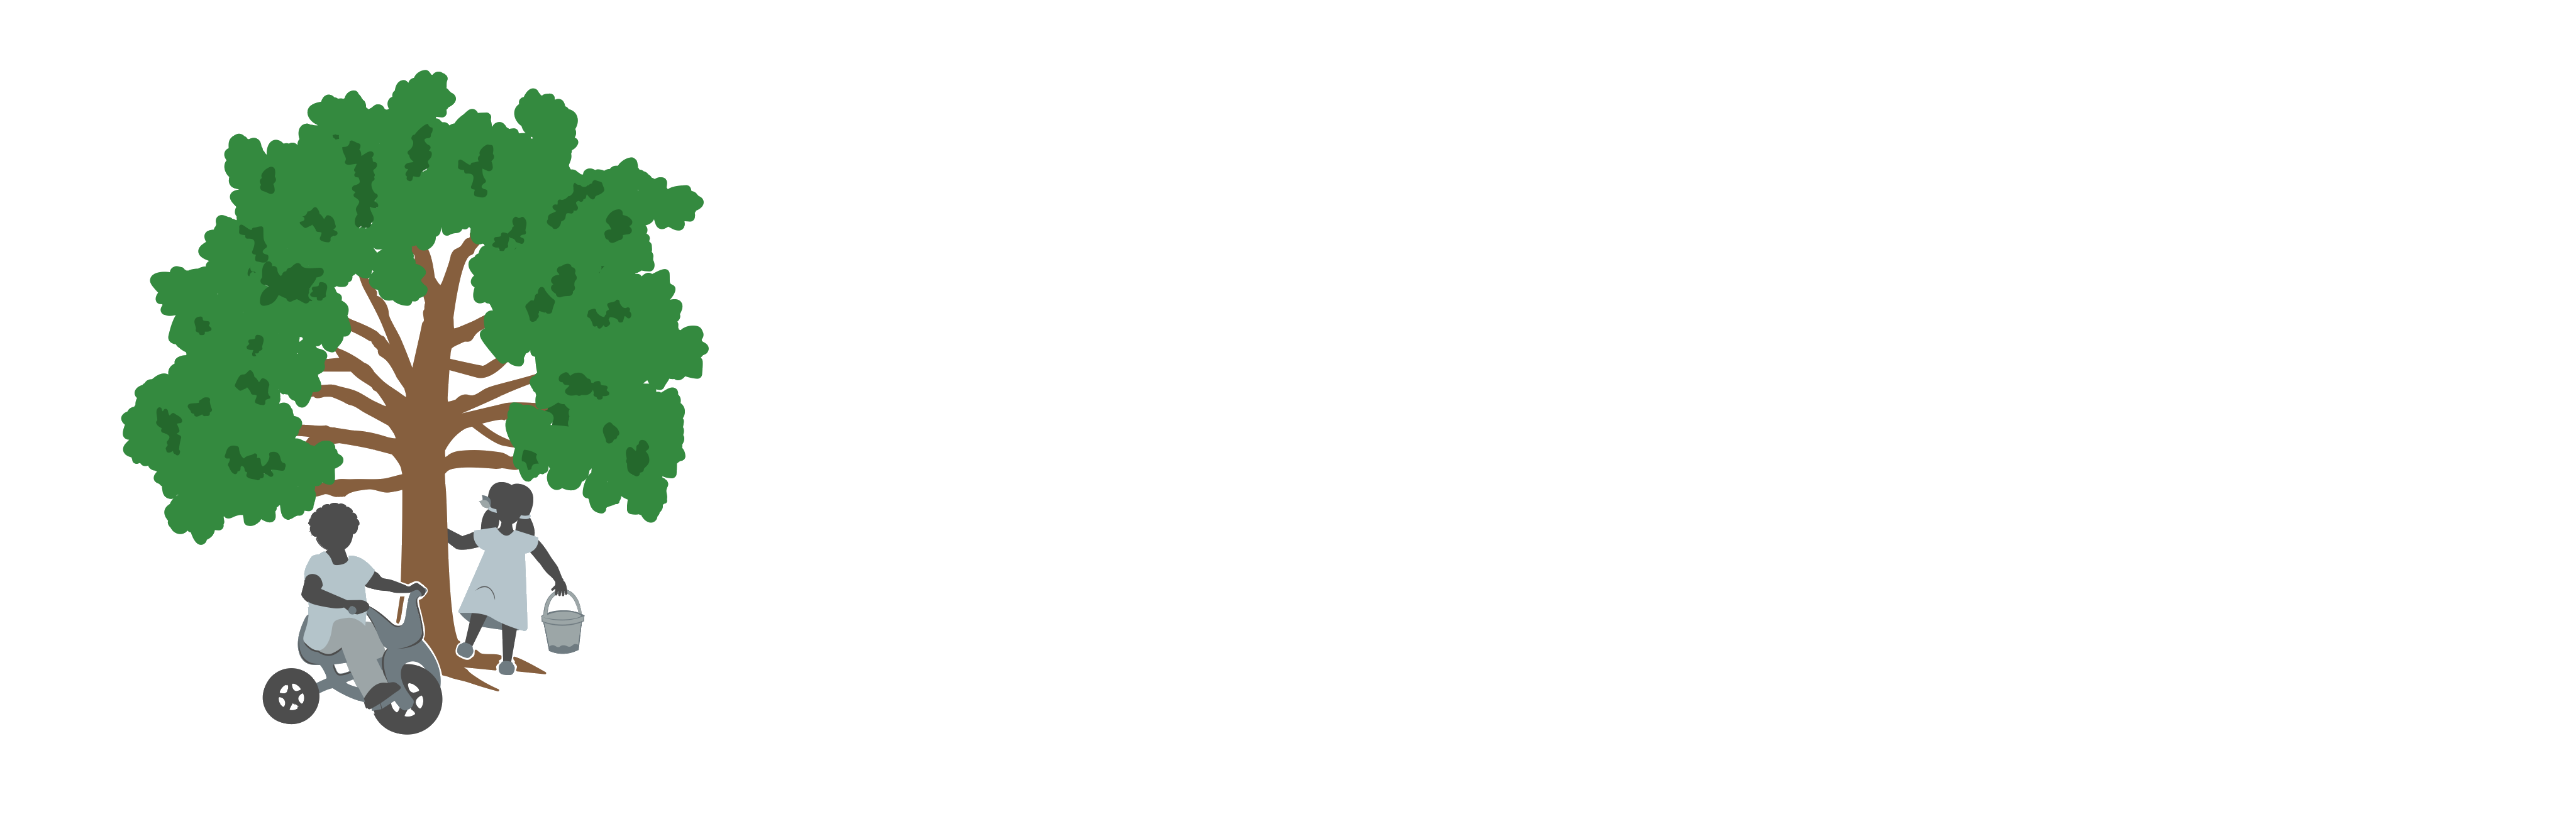 running brook children's nursery